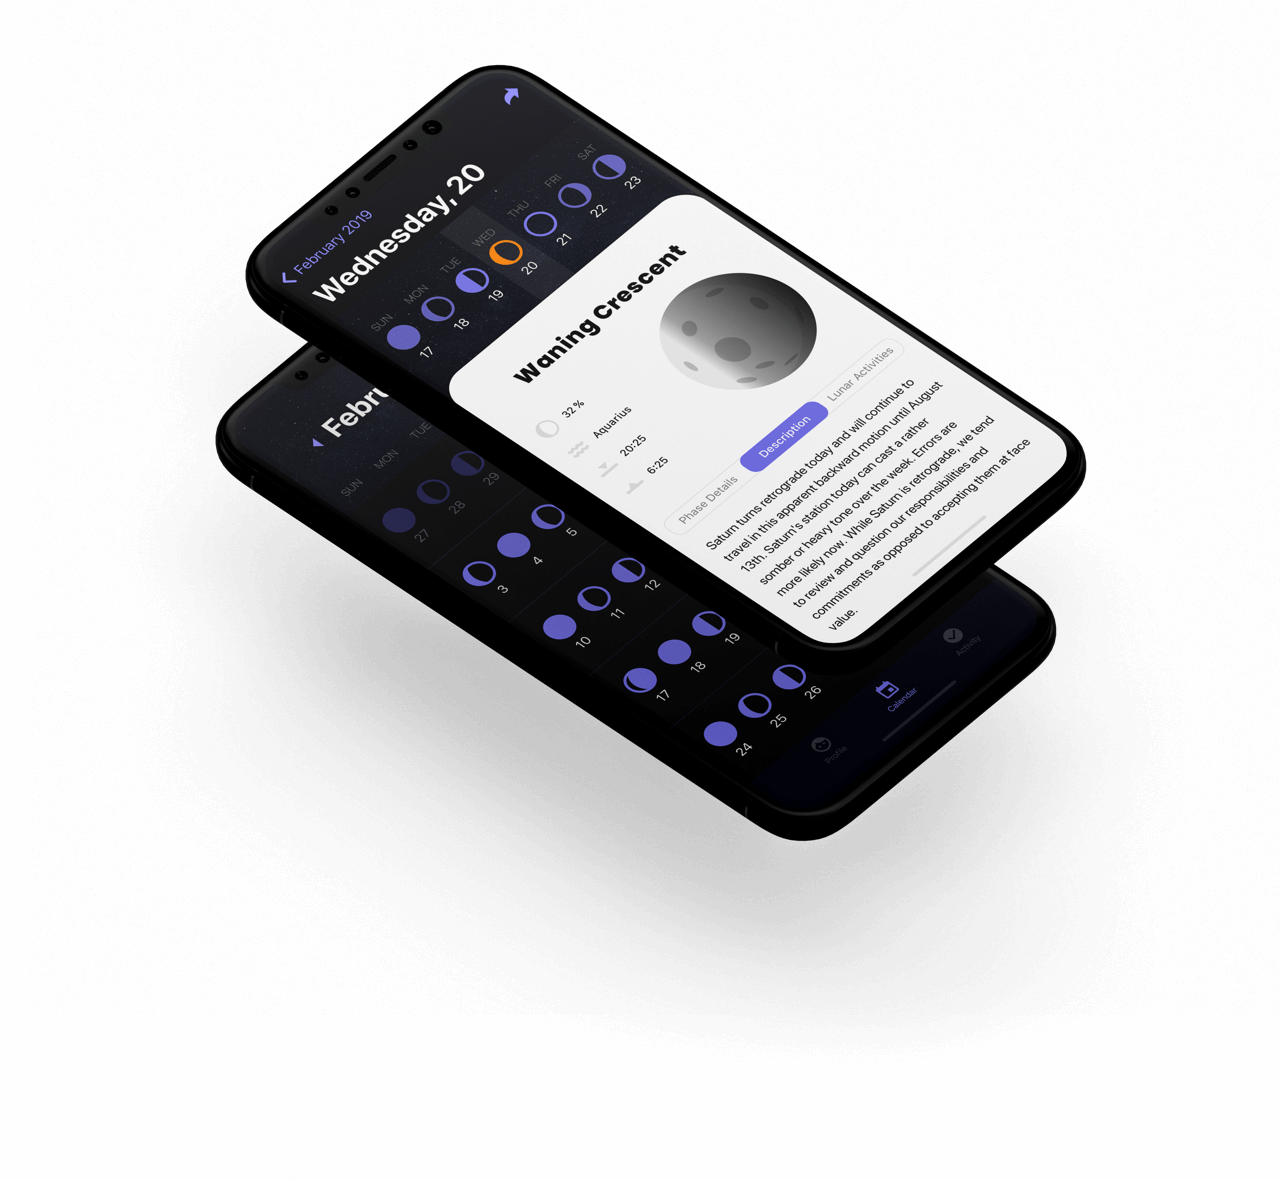 An iOS App with a Moon Age Calculator